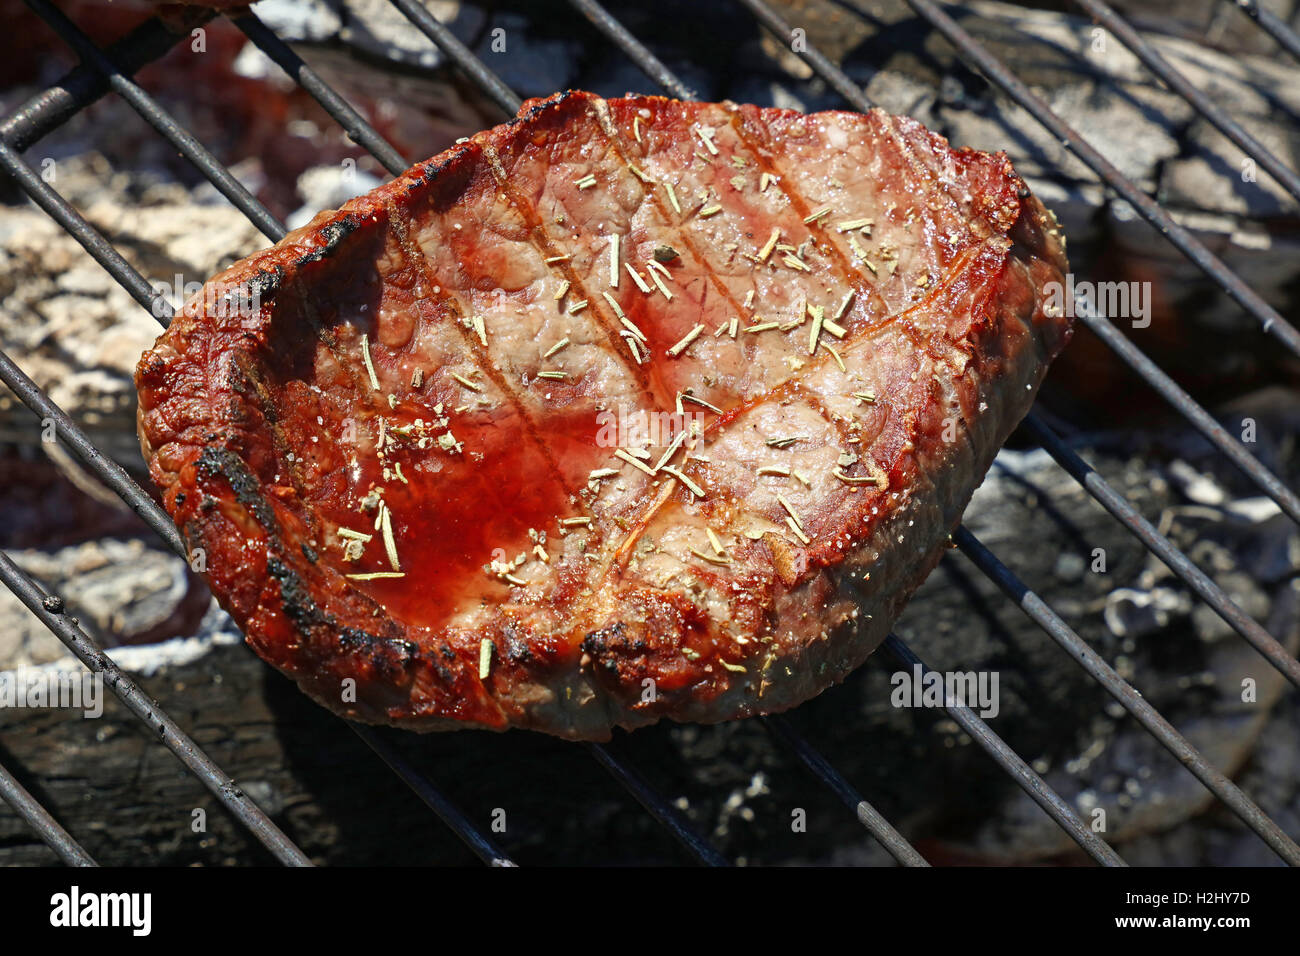 Una rara cotte alla brace barbecue carne di manzo con spezie e sangue succo di carne preparati per la cottura sulla griglia per il barbecue, close up Foto Stock